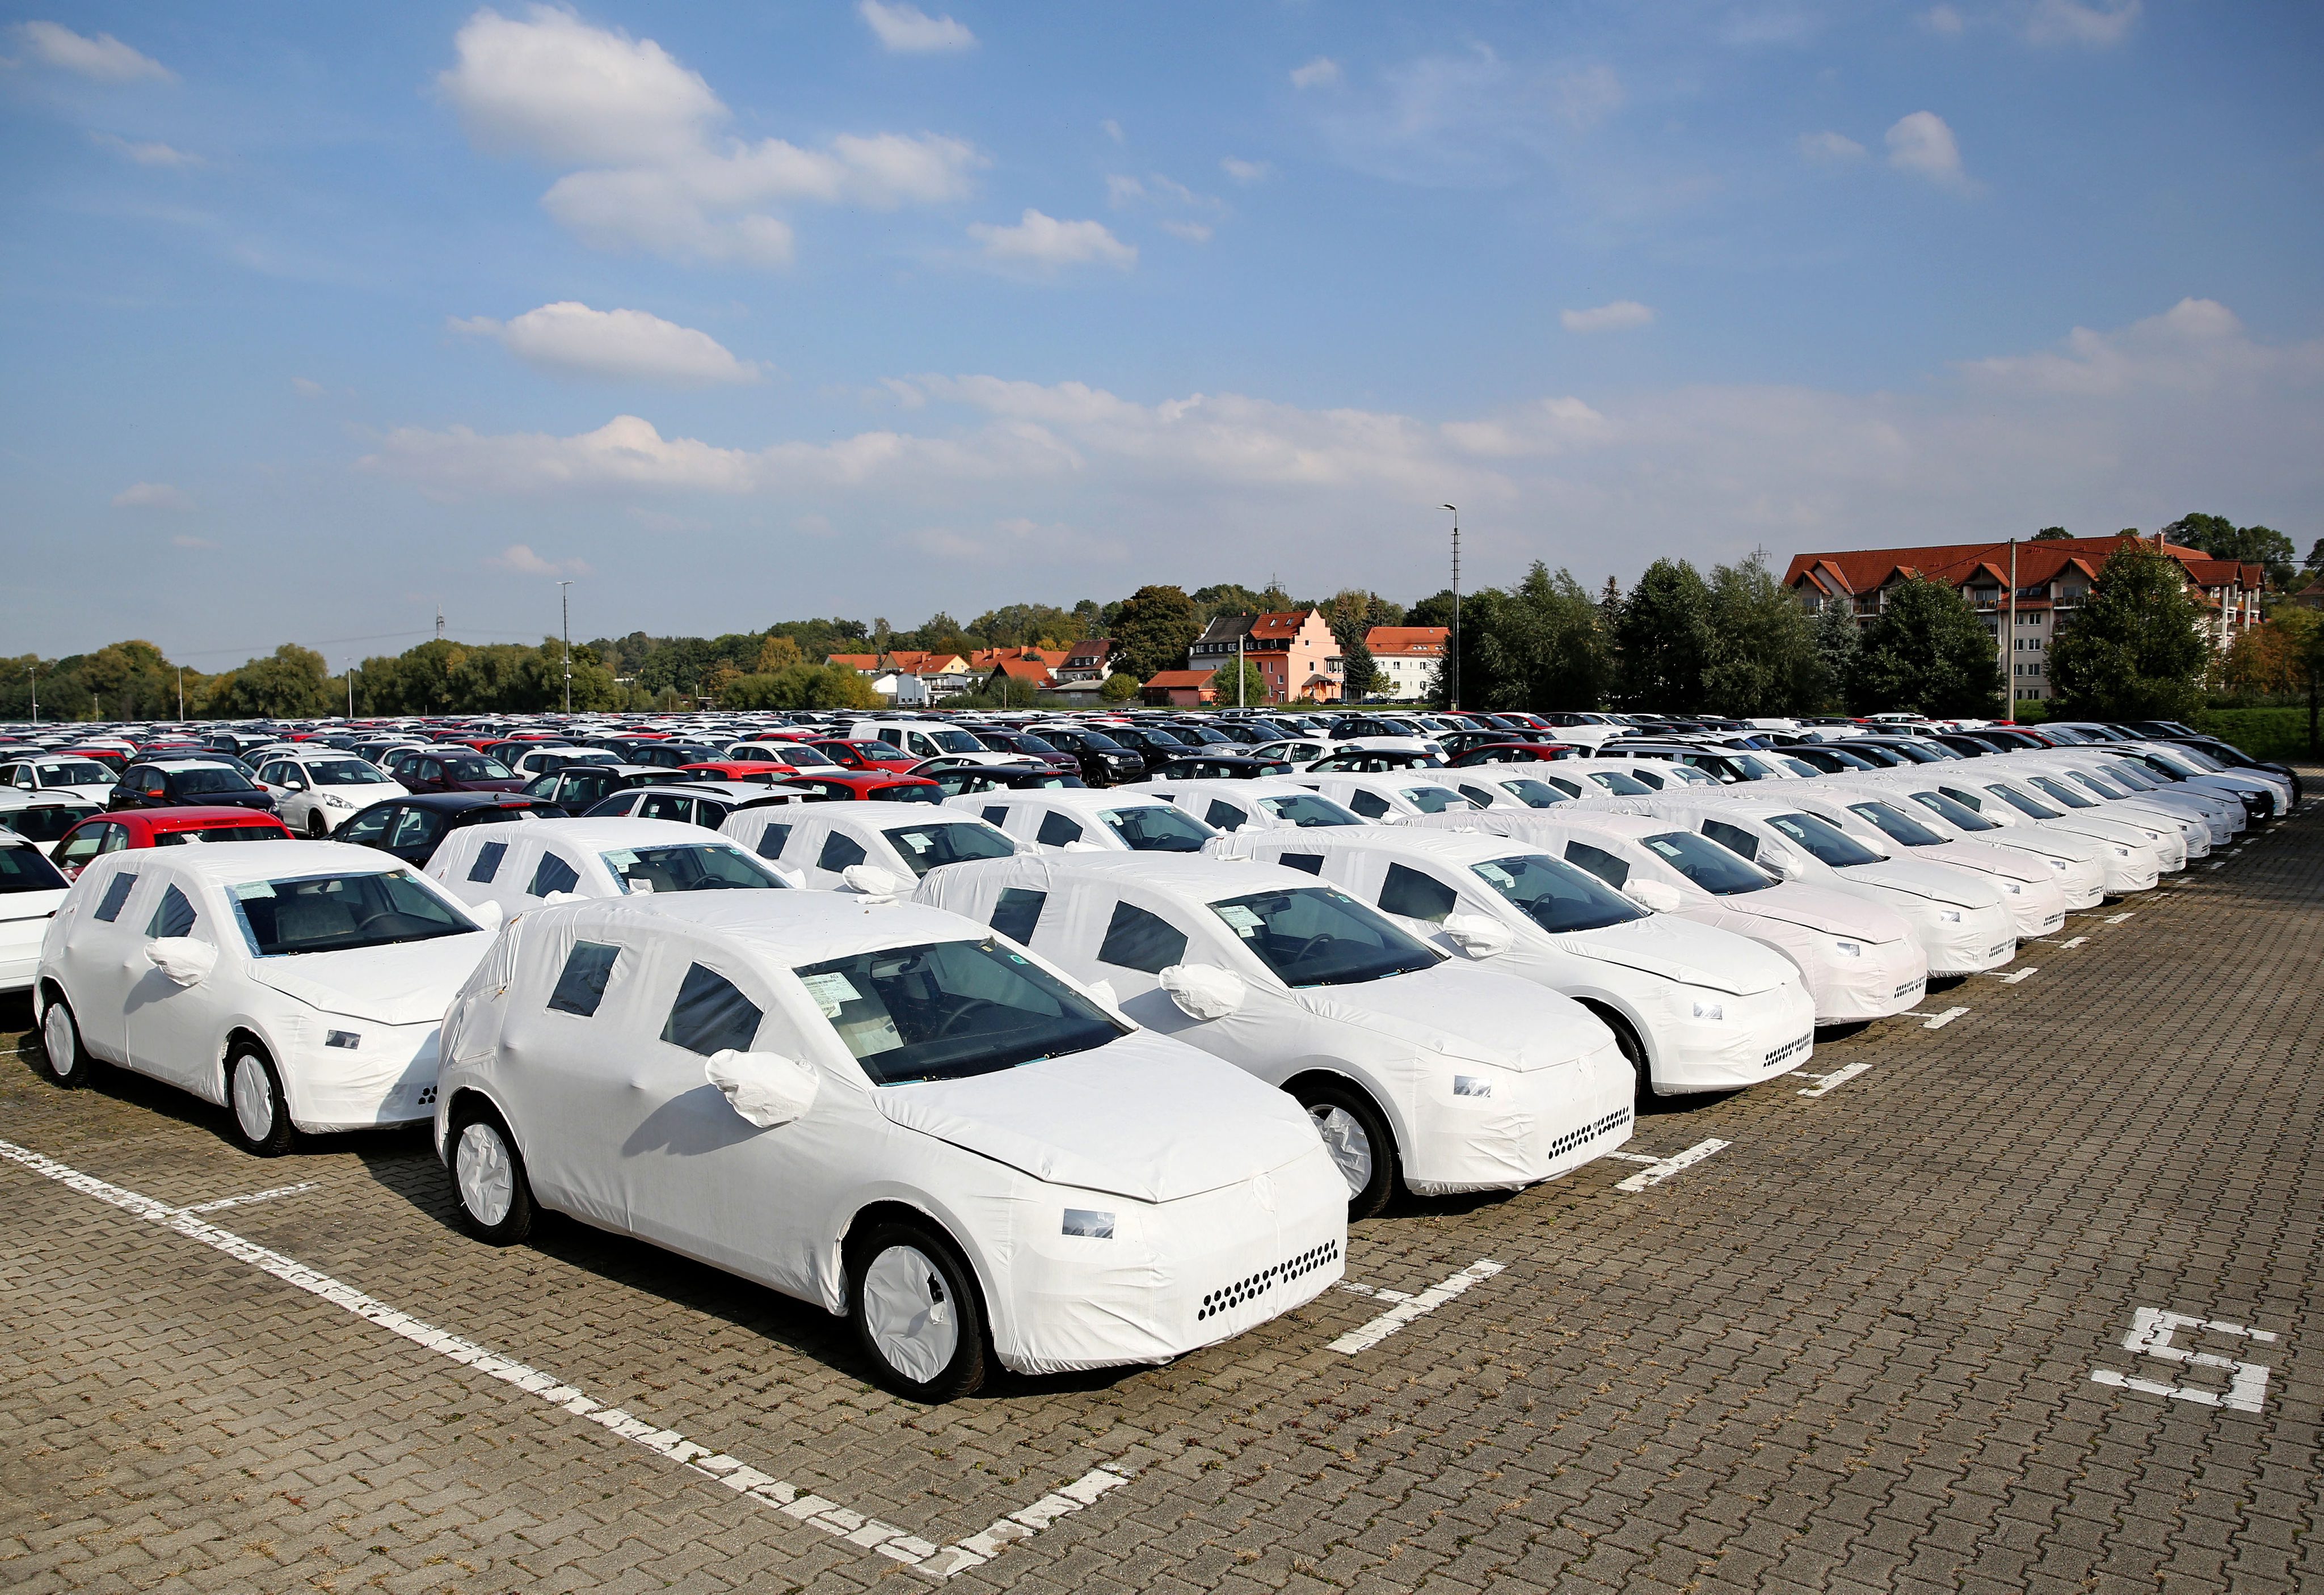 VW: Αυτά είναι τα αυτοκίνητα που επηρεάζονται από το ζήτημα των εκπομπών C02 (Model Year 2016)